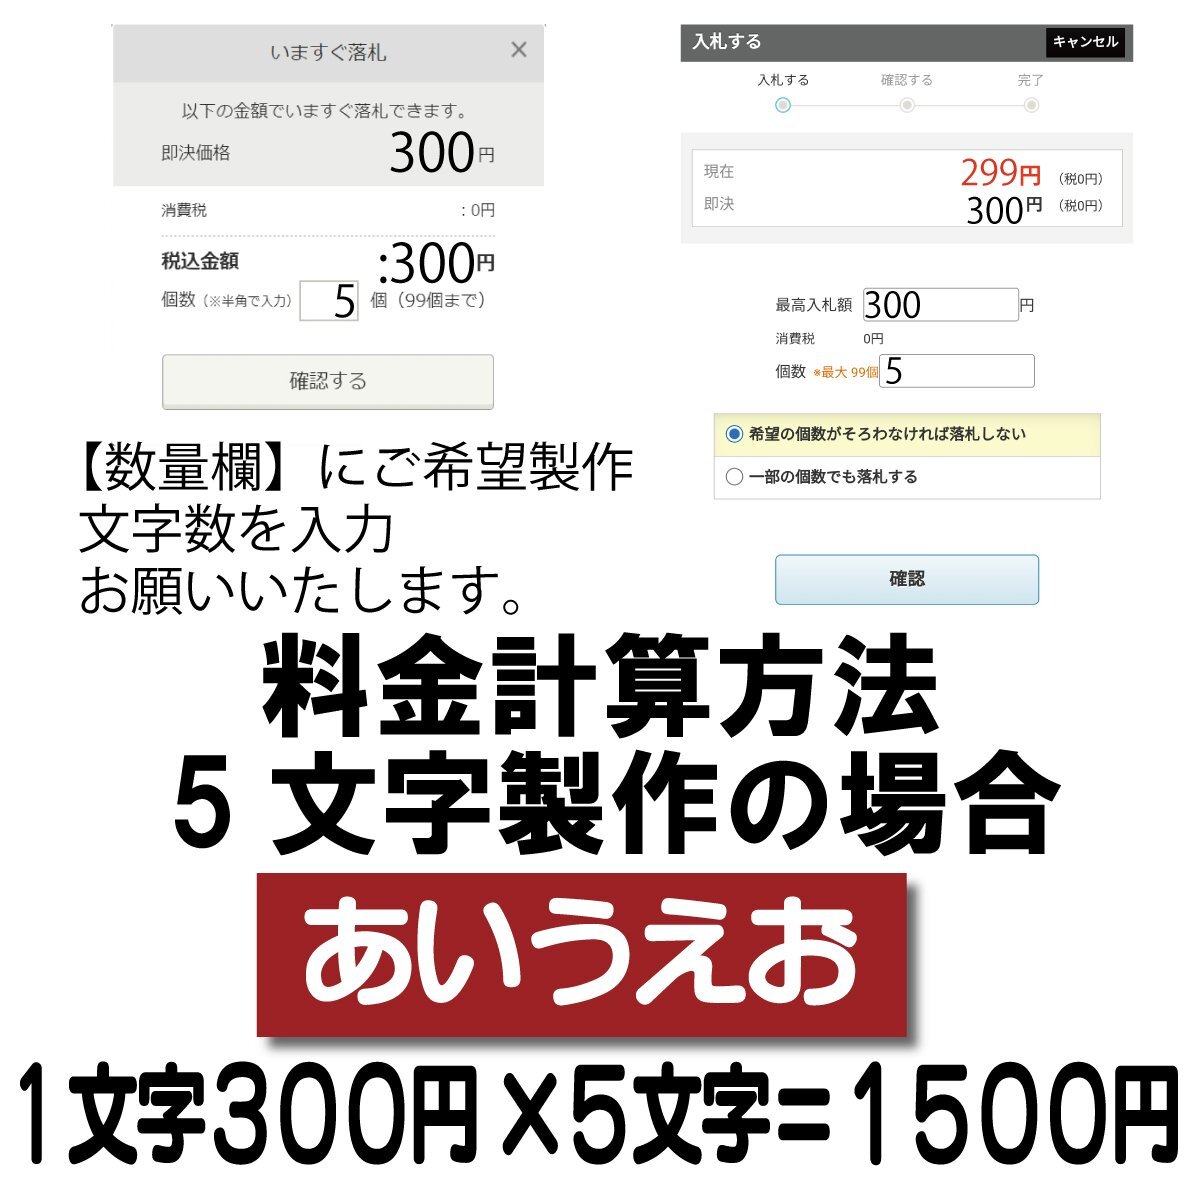 Если количество символов составляет 5 символов, это будет 1000 иен.